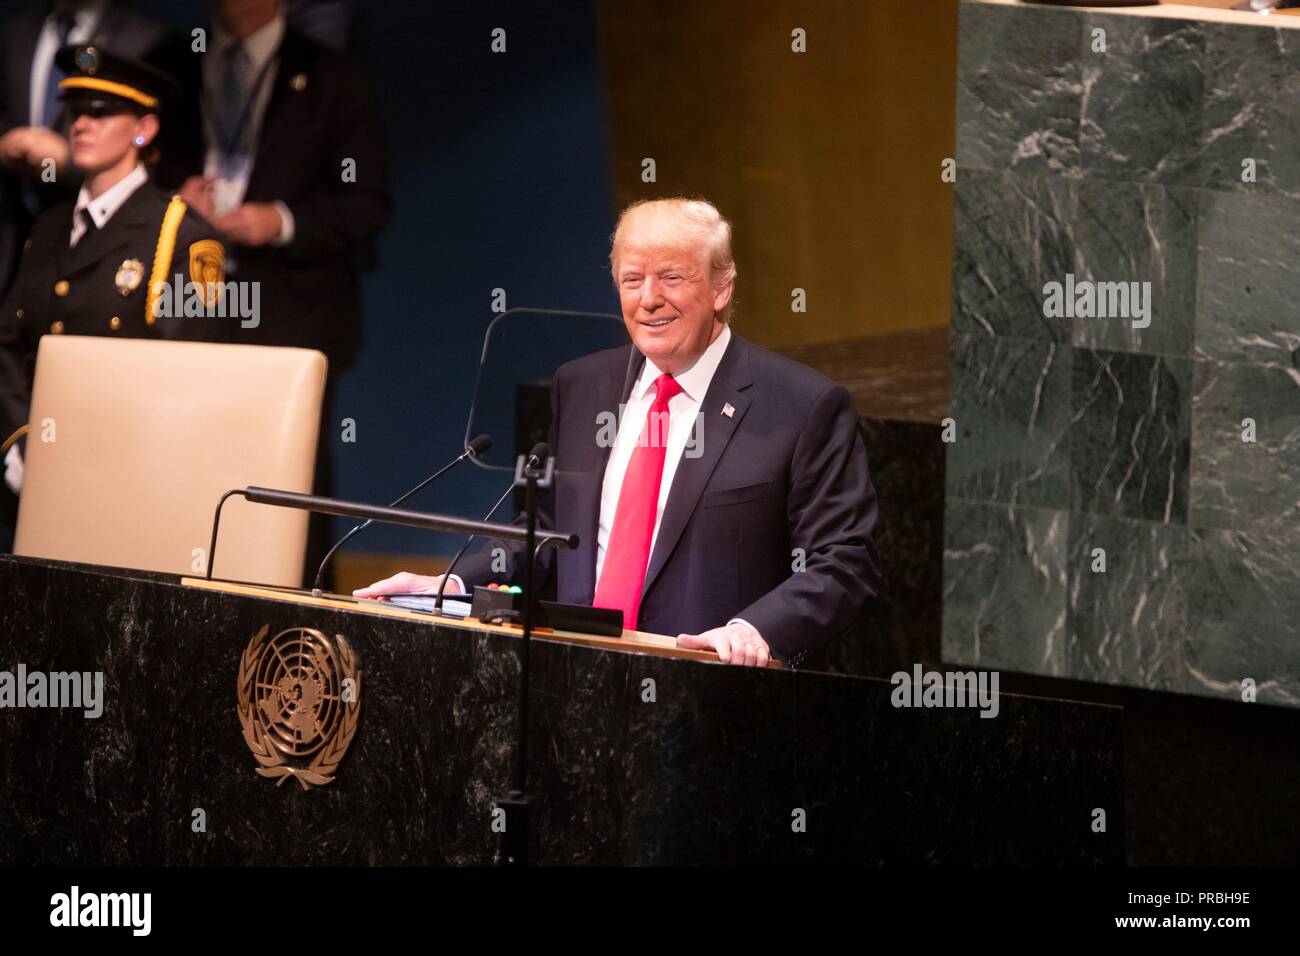 Us-Präsident Donald Trump lacht während seiner Ansprache an die 73. Sitzung der UN-Generalversammlung am Sitz der Vereinten Nationen am 25. September 2018 in New York, New York. Trump wurde reagiert, nachdem das Publikum der Führer der Welt offen bei Trumpf nach prahlen, die er "mehr als jeder amerikanische Präsident in der Geschichte' lachte. Stockfoto